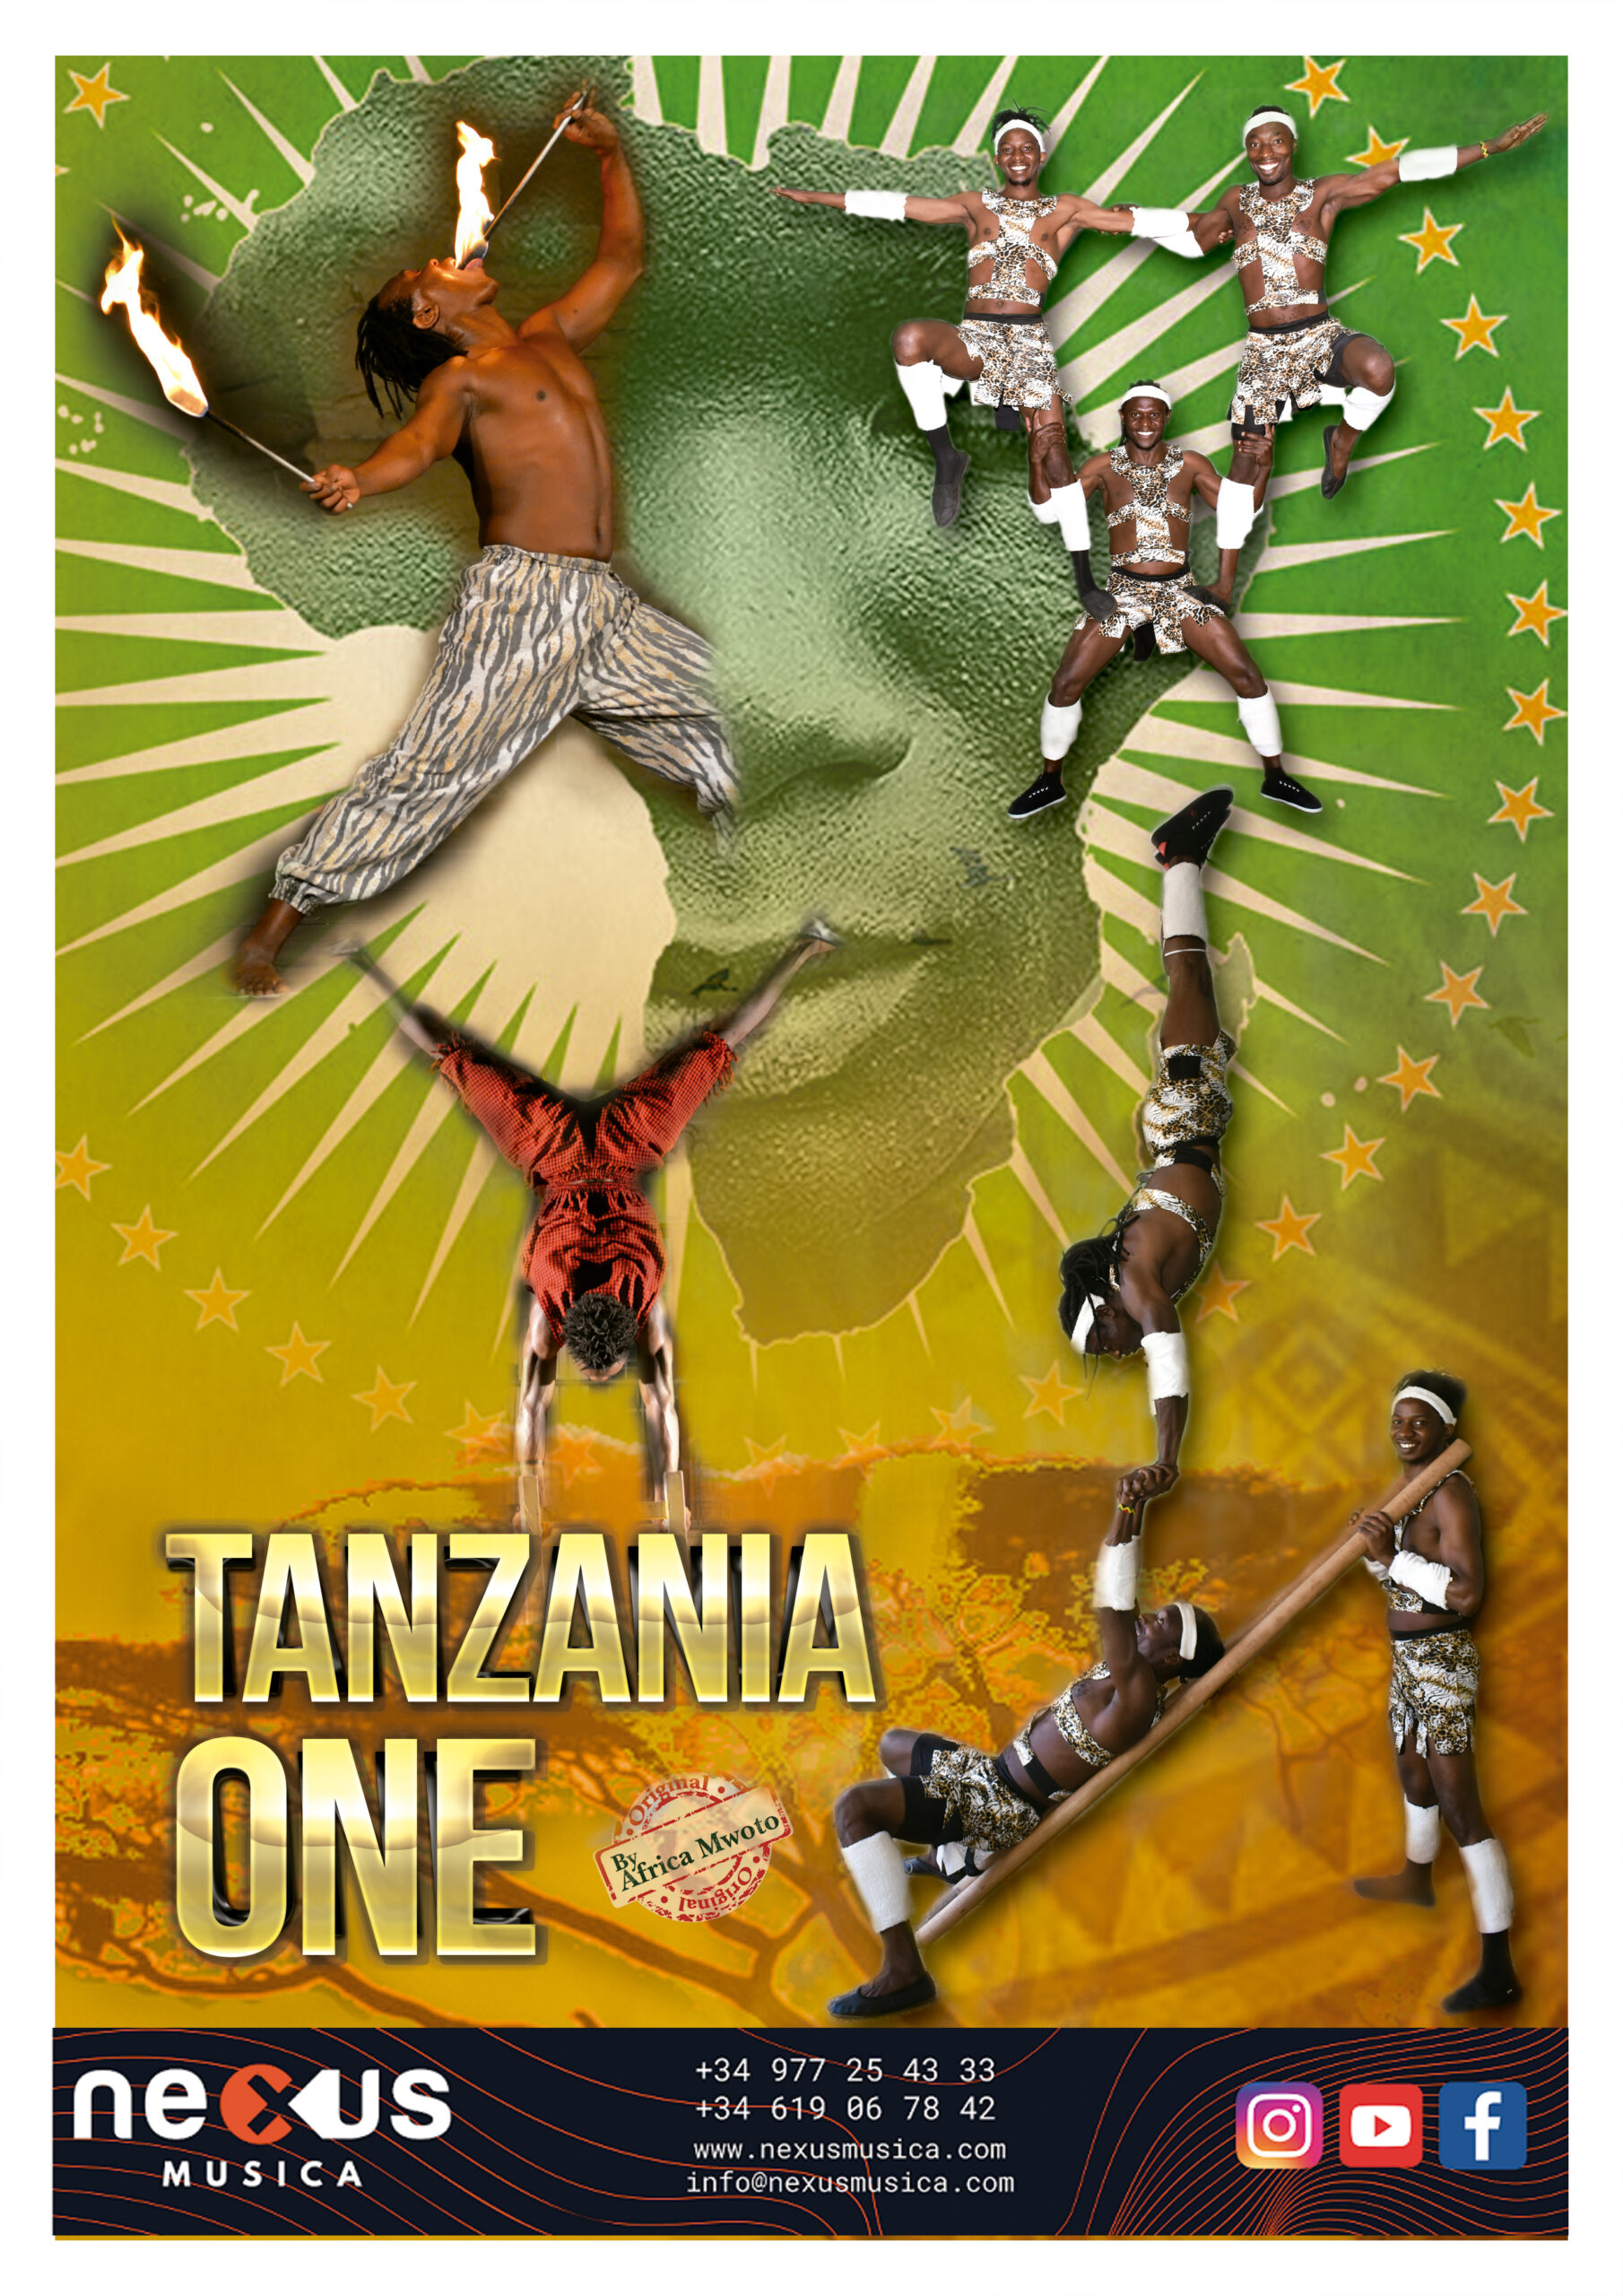 En este momento estás viendo Tanzania One